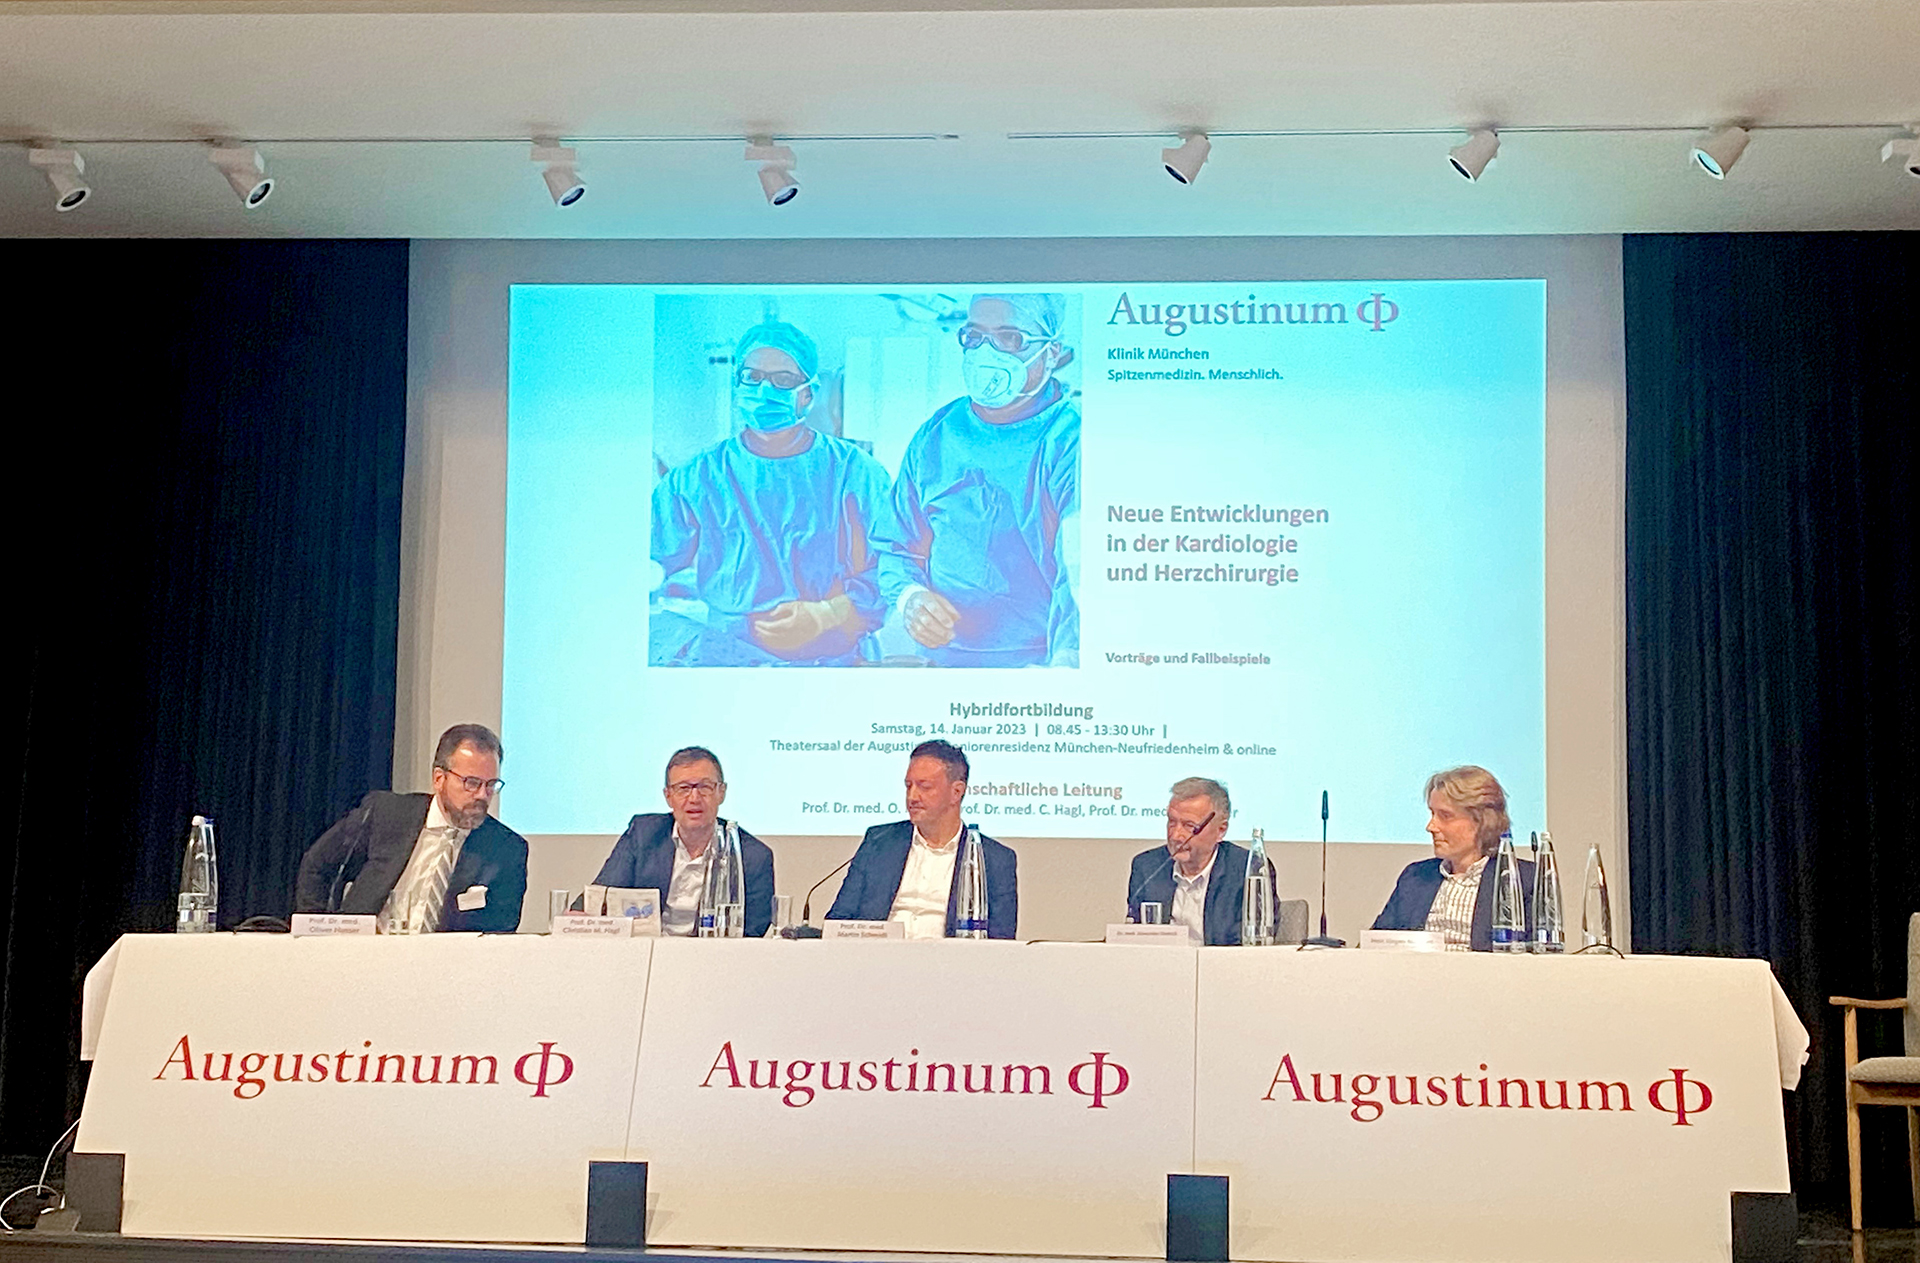 Hochkarätige Experten aus der Kardiologie auf dem Podium beim kardiologischen Symposium der Augustinum Klinik München